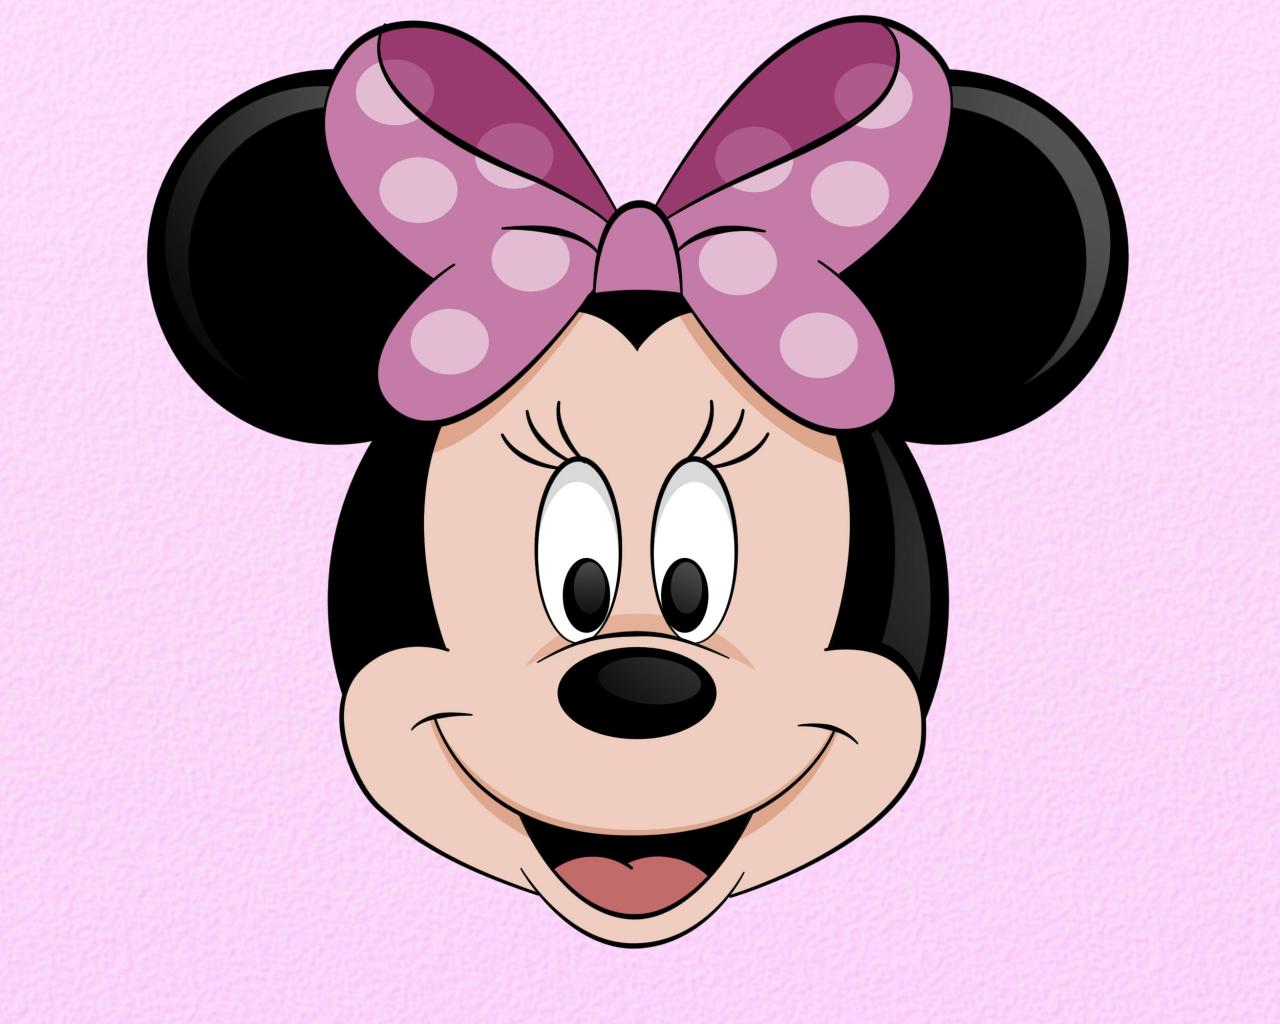 Minnie Mouse fondos de pantalla, fotos, imágenes